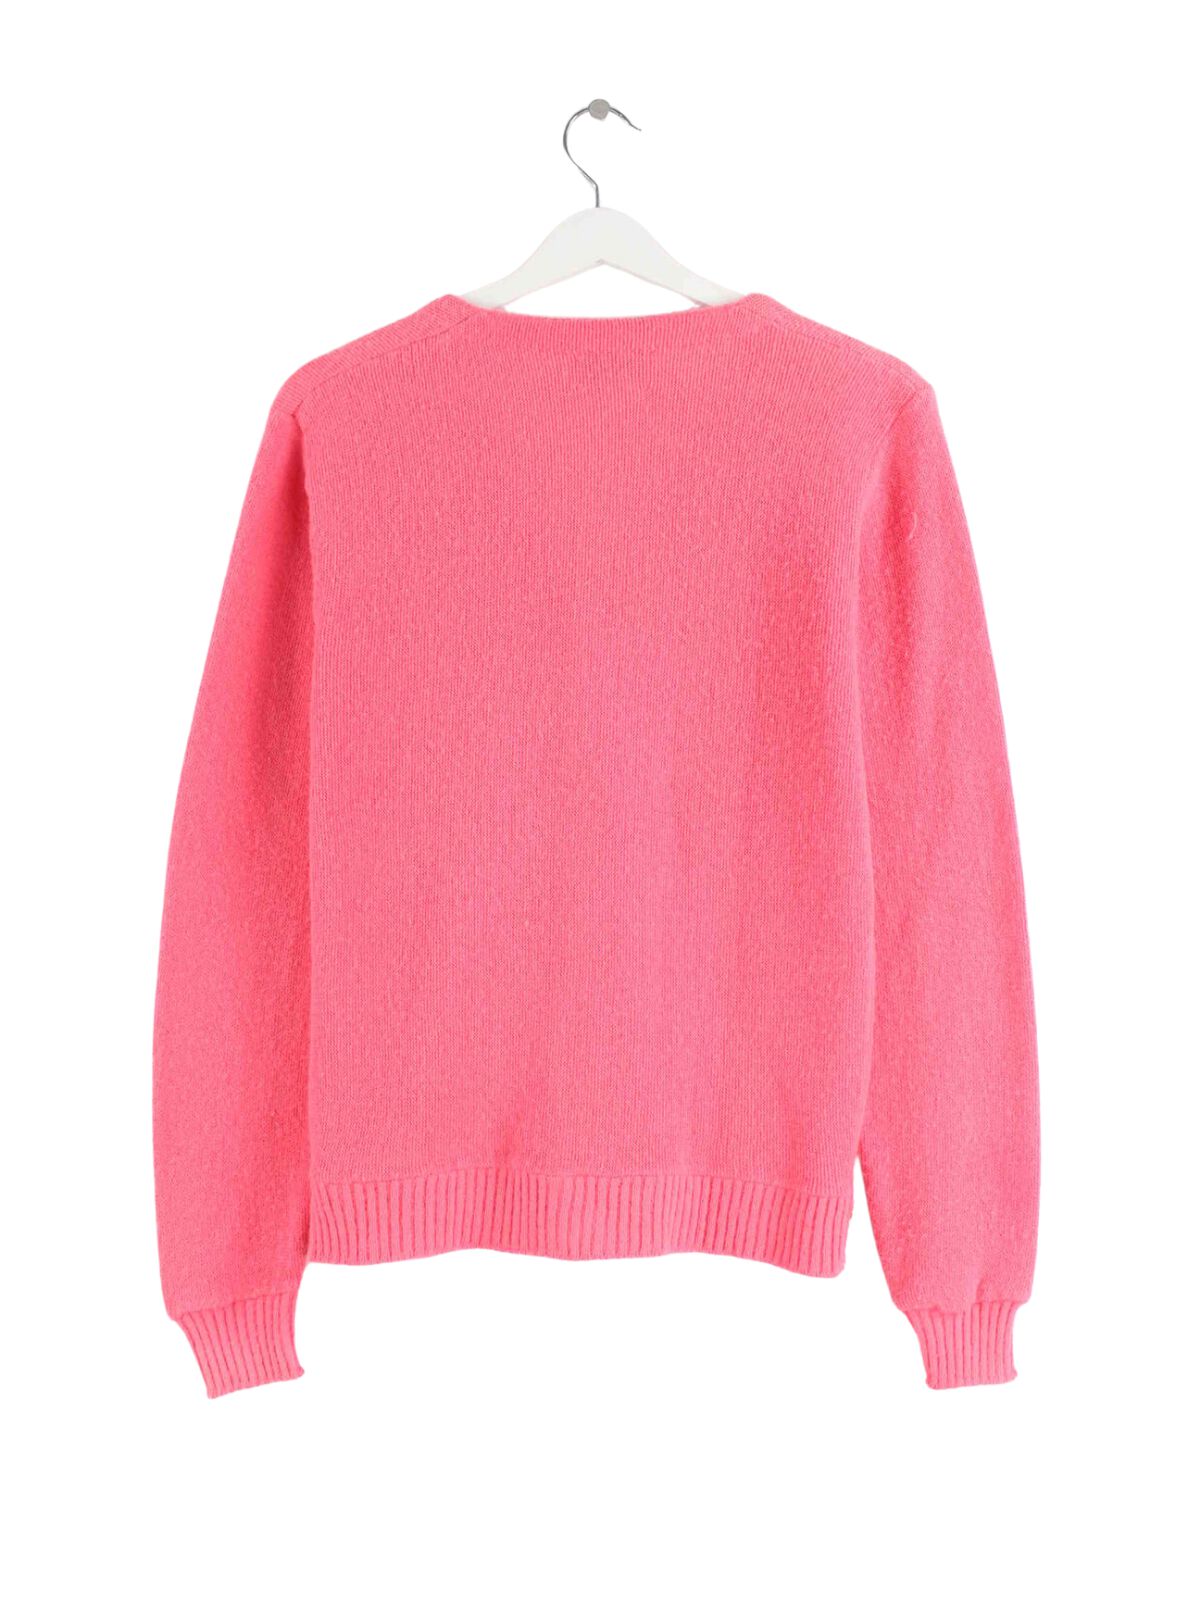 Lacoste Damen 90s Vintage Pullover Pink M (back image)